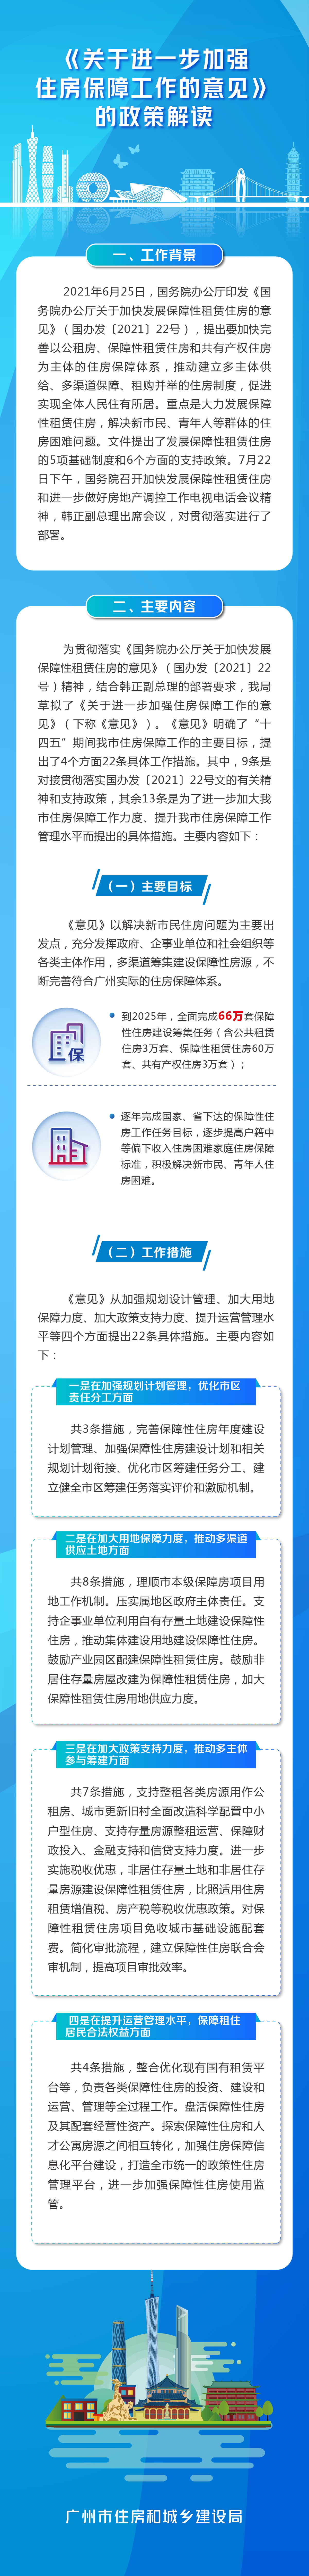 图文解读】《广州市人民政府办公厅关于进一步加强住房保障工作的意见》